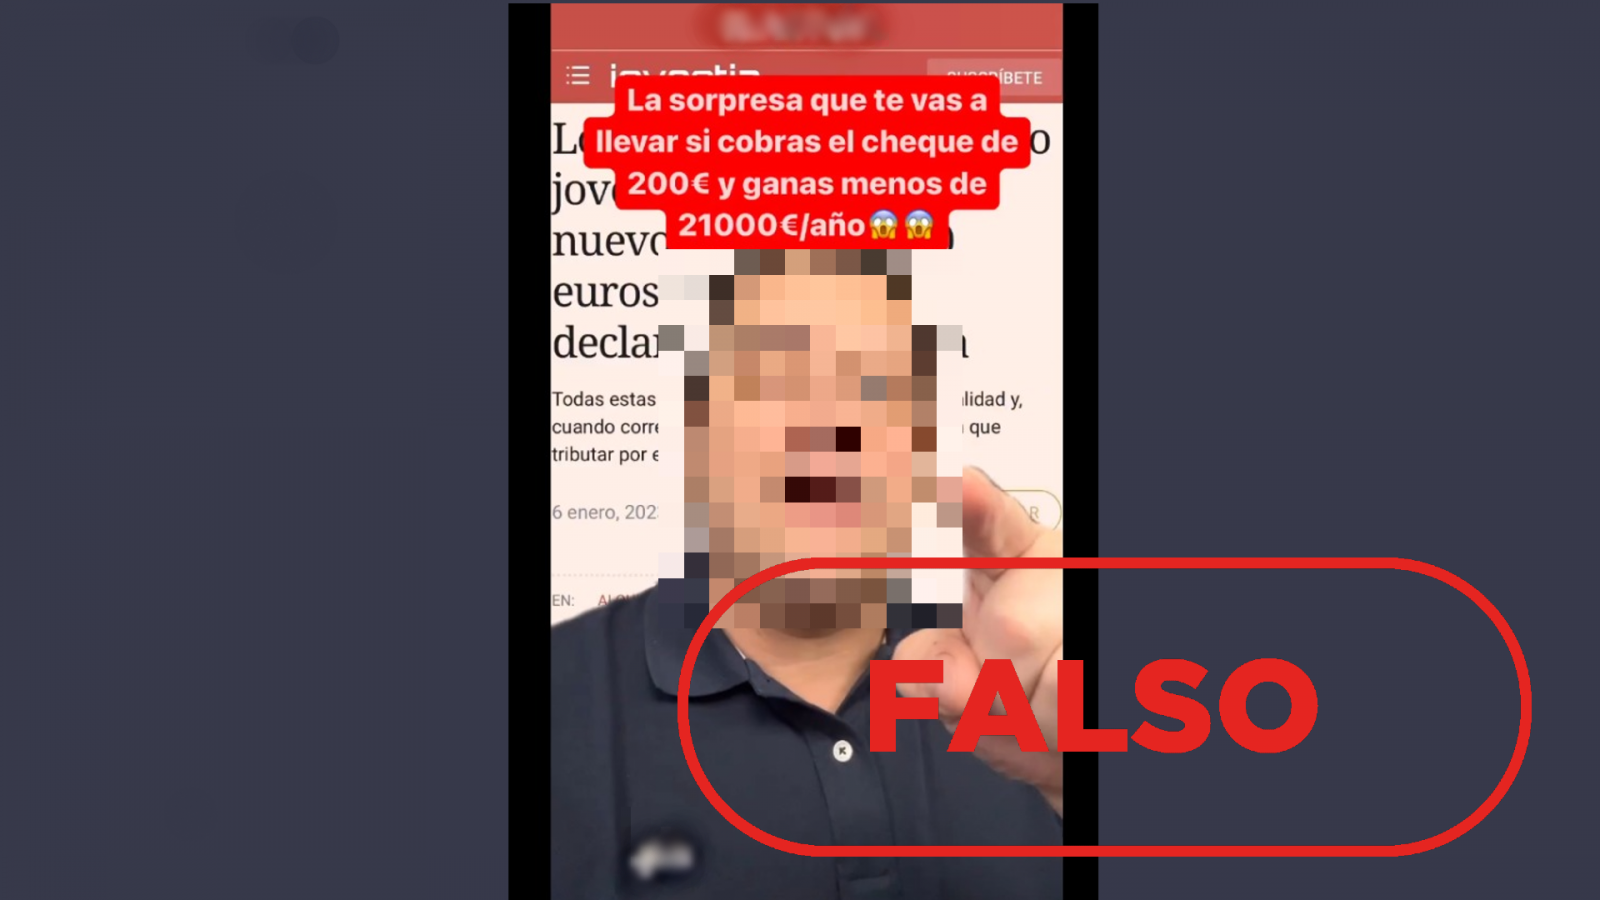 Vídeo que nos remiten a nuestro WhatsApp que difunde la falsa idea de que el cheque de 200 euros te obliga a hacer la declaración de la renta, con el sello 'Falso' en rojo